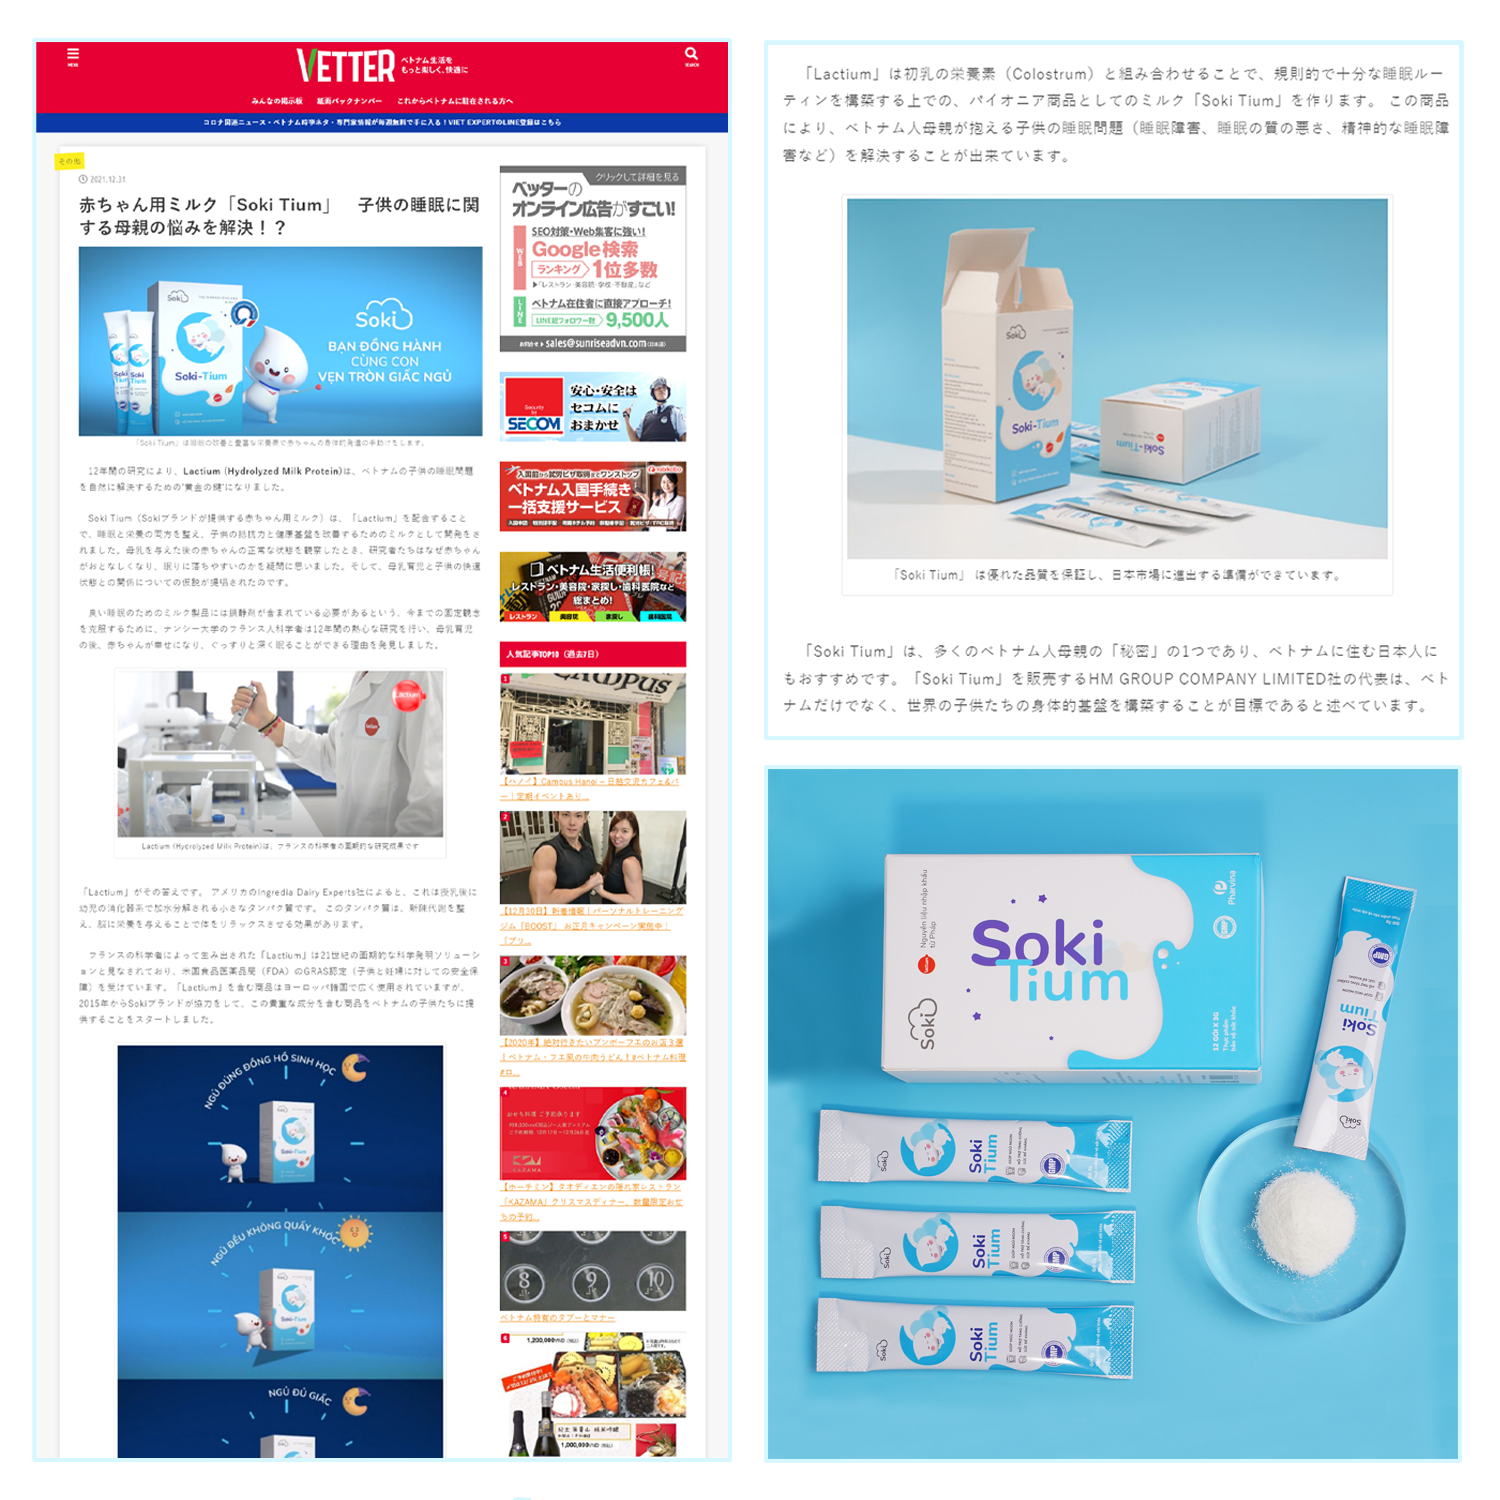 Soki Tium nhận được cơn mưa lời khen về chất lượng sản phẩm trên tạp chí của Nhật Bản